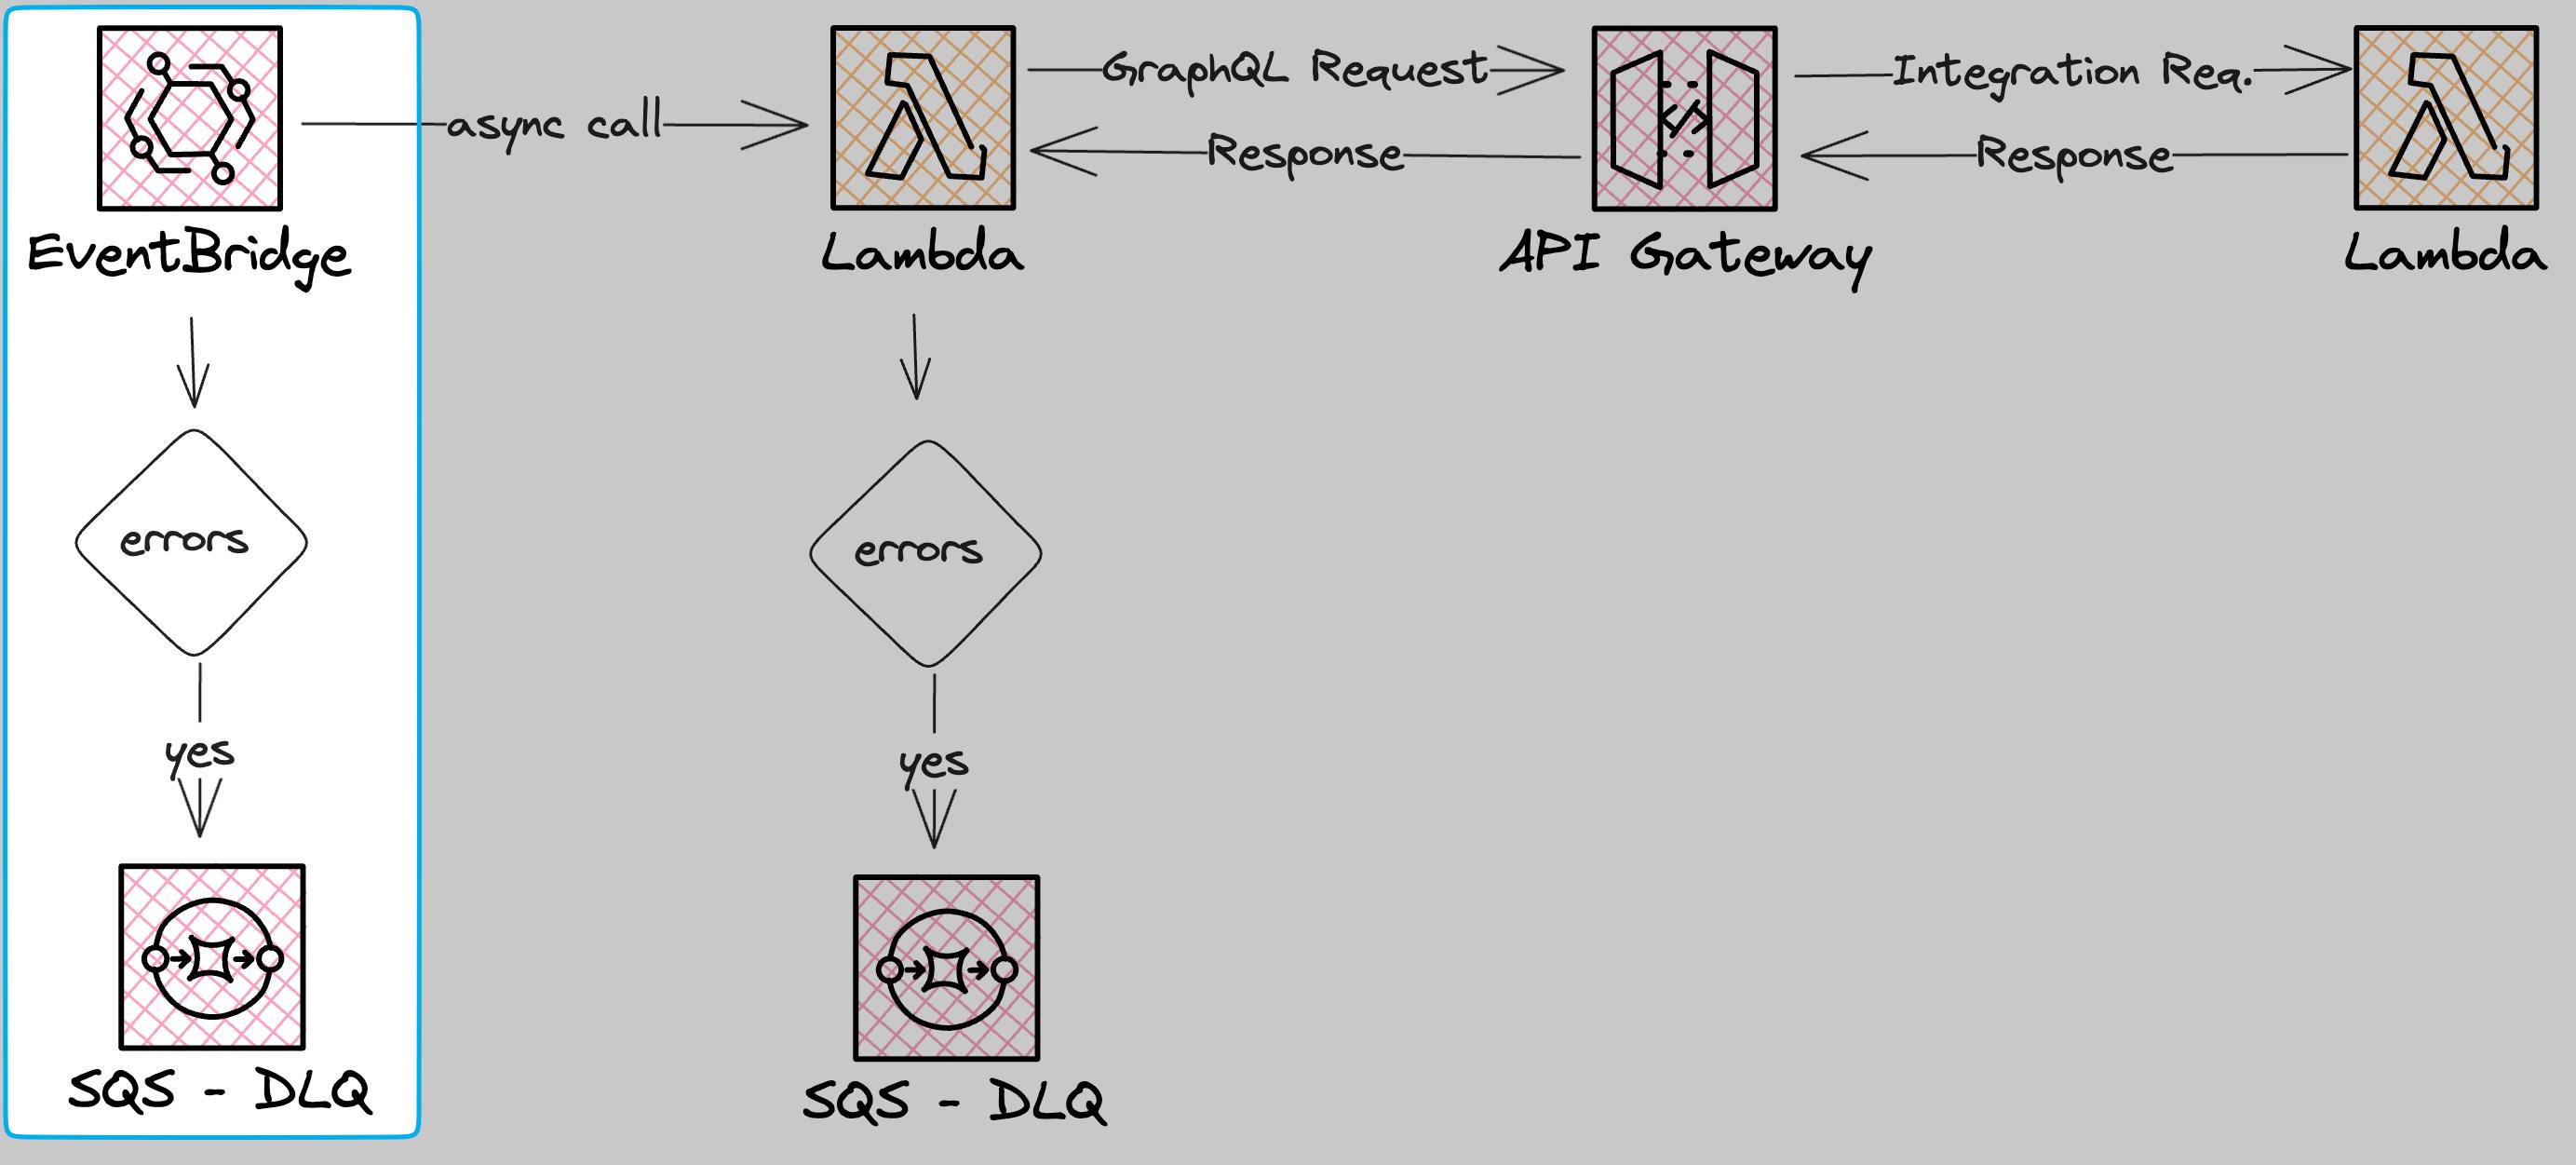 DLQ for EventBridge errors